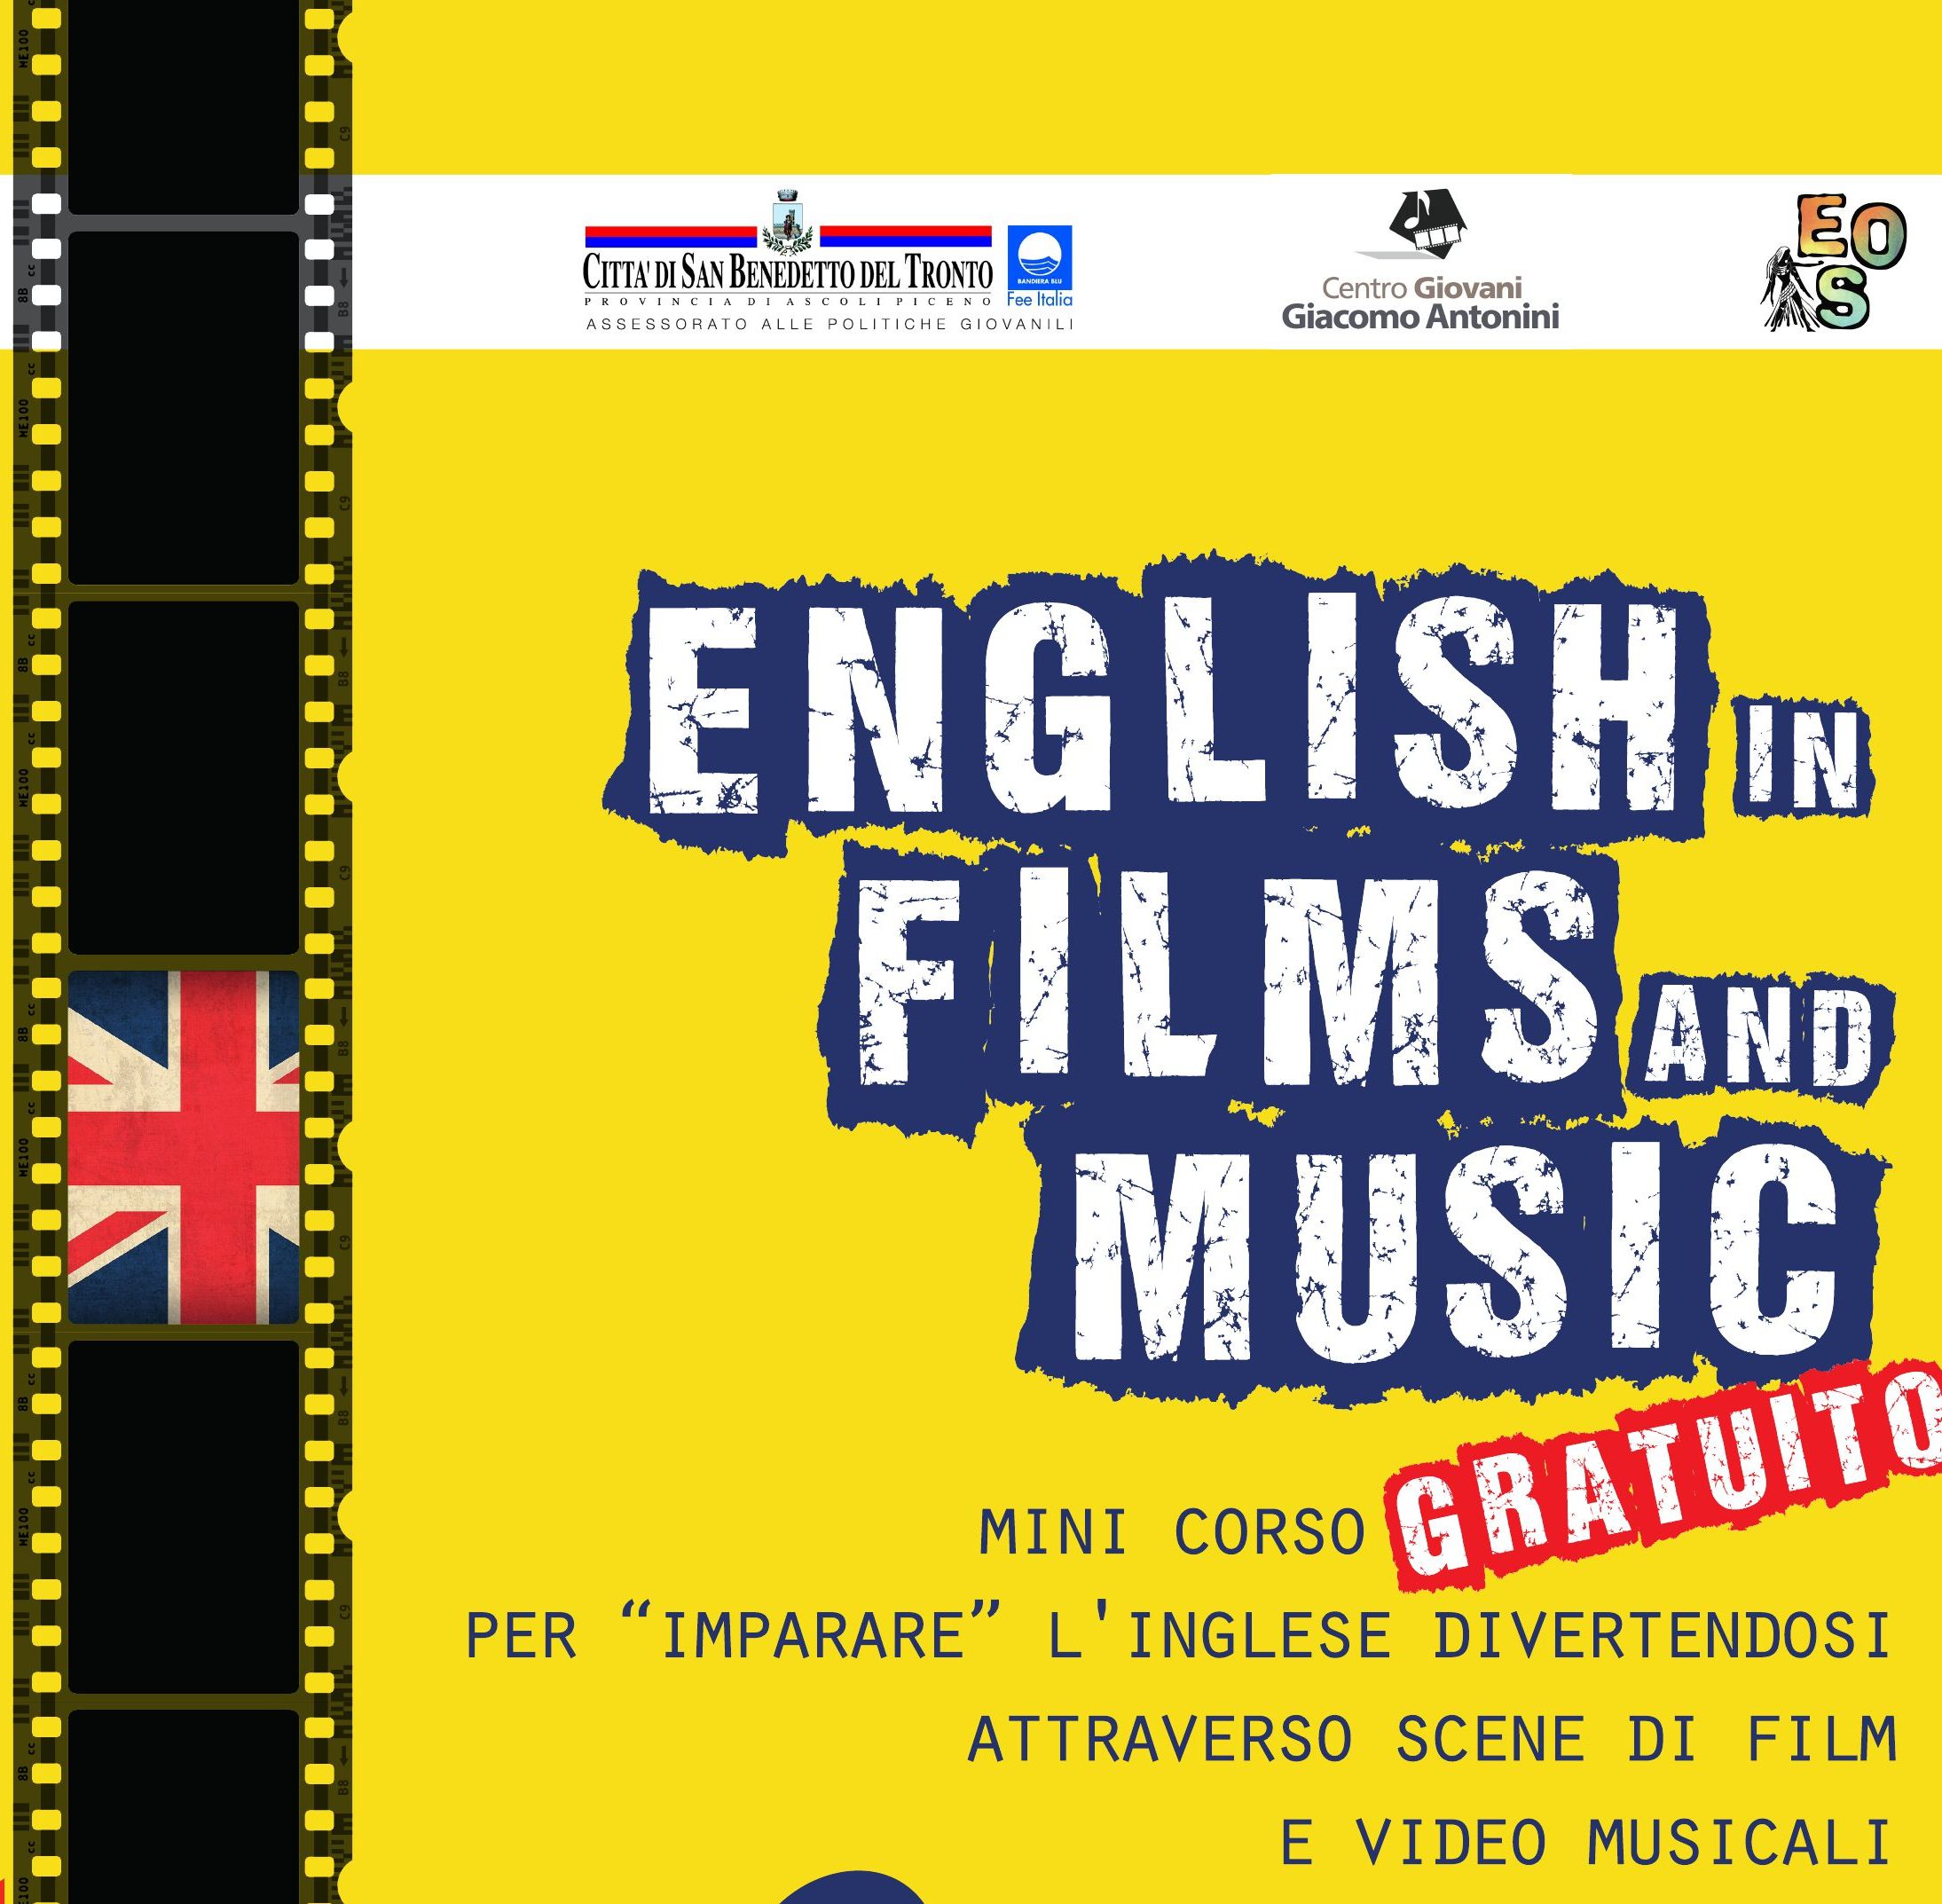 Al Centro Giovani si impara l'inglese attraverso film e musica